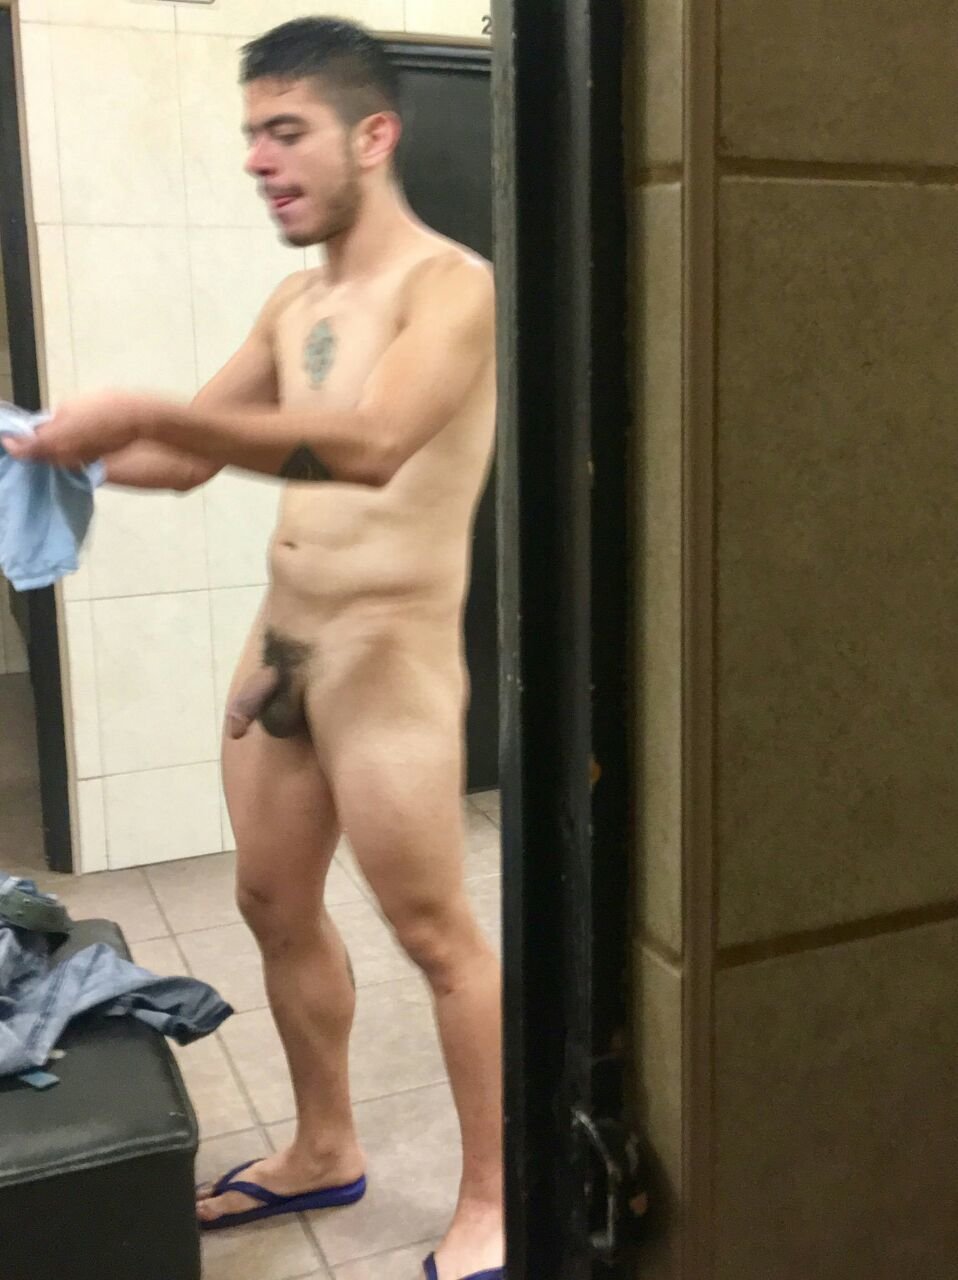 chris hamett recommends spy cam men naked pic